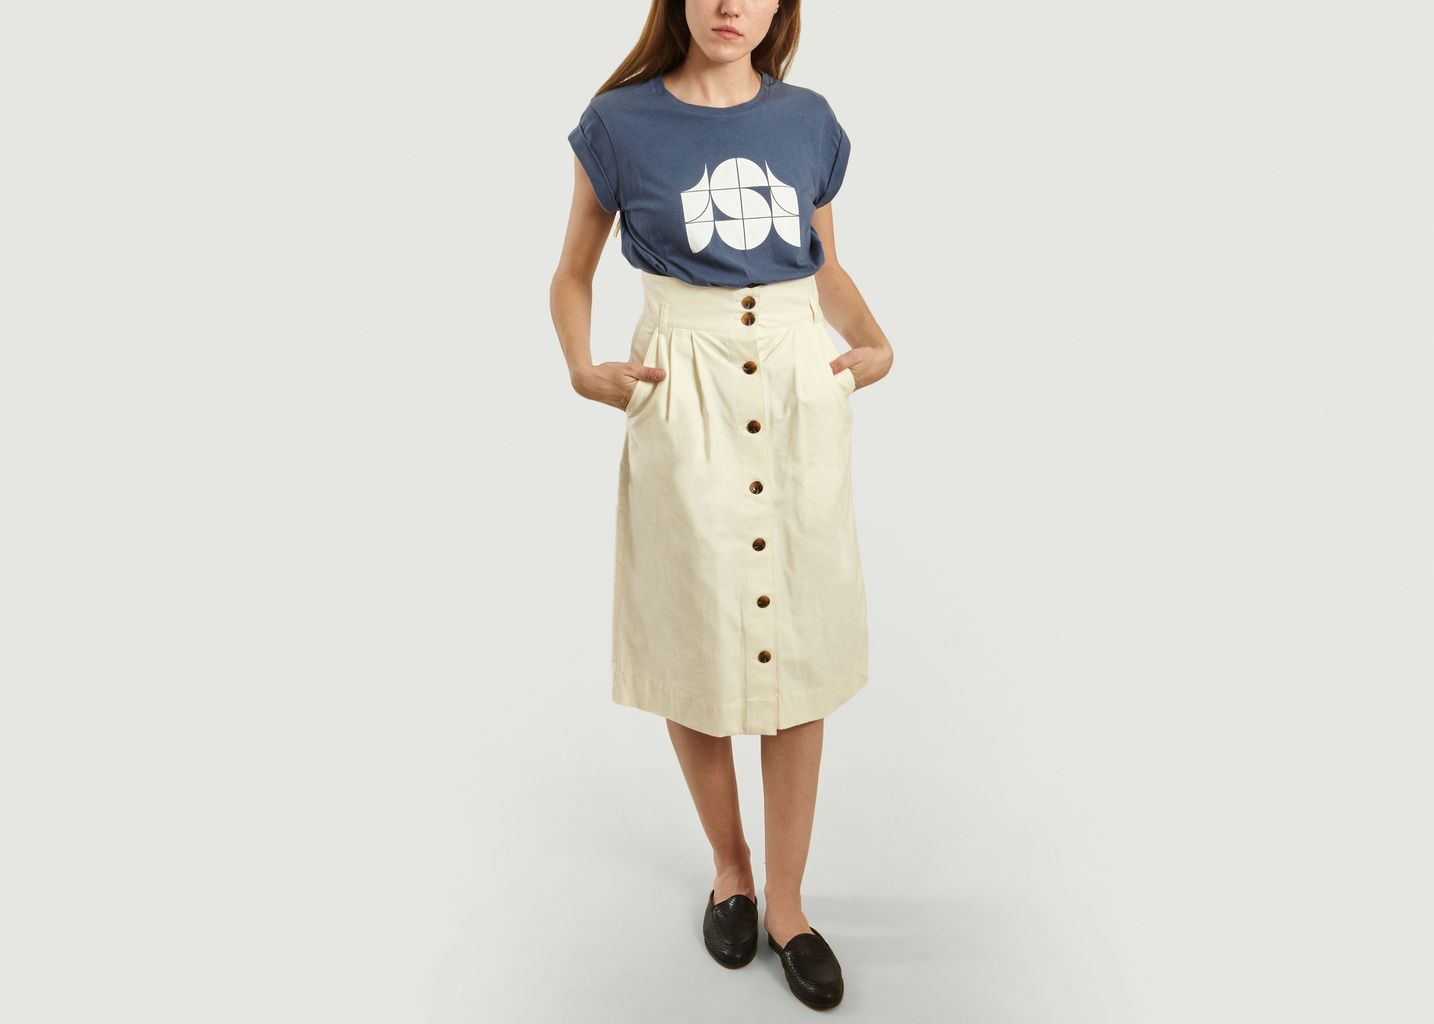  Ischia High Waist Japanese Flamed Cotton Skirt - Soeur